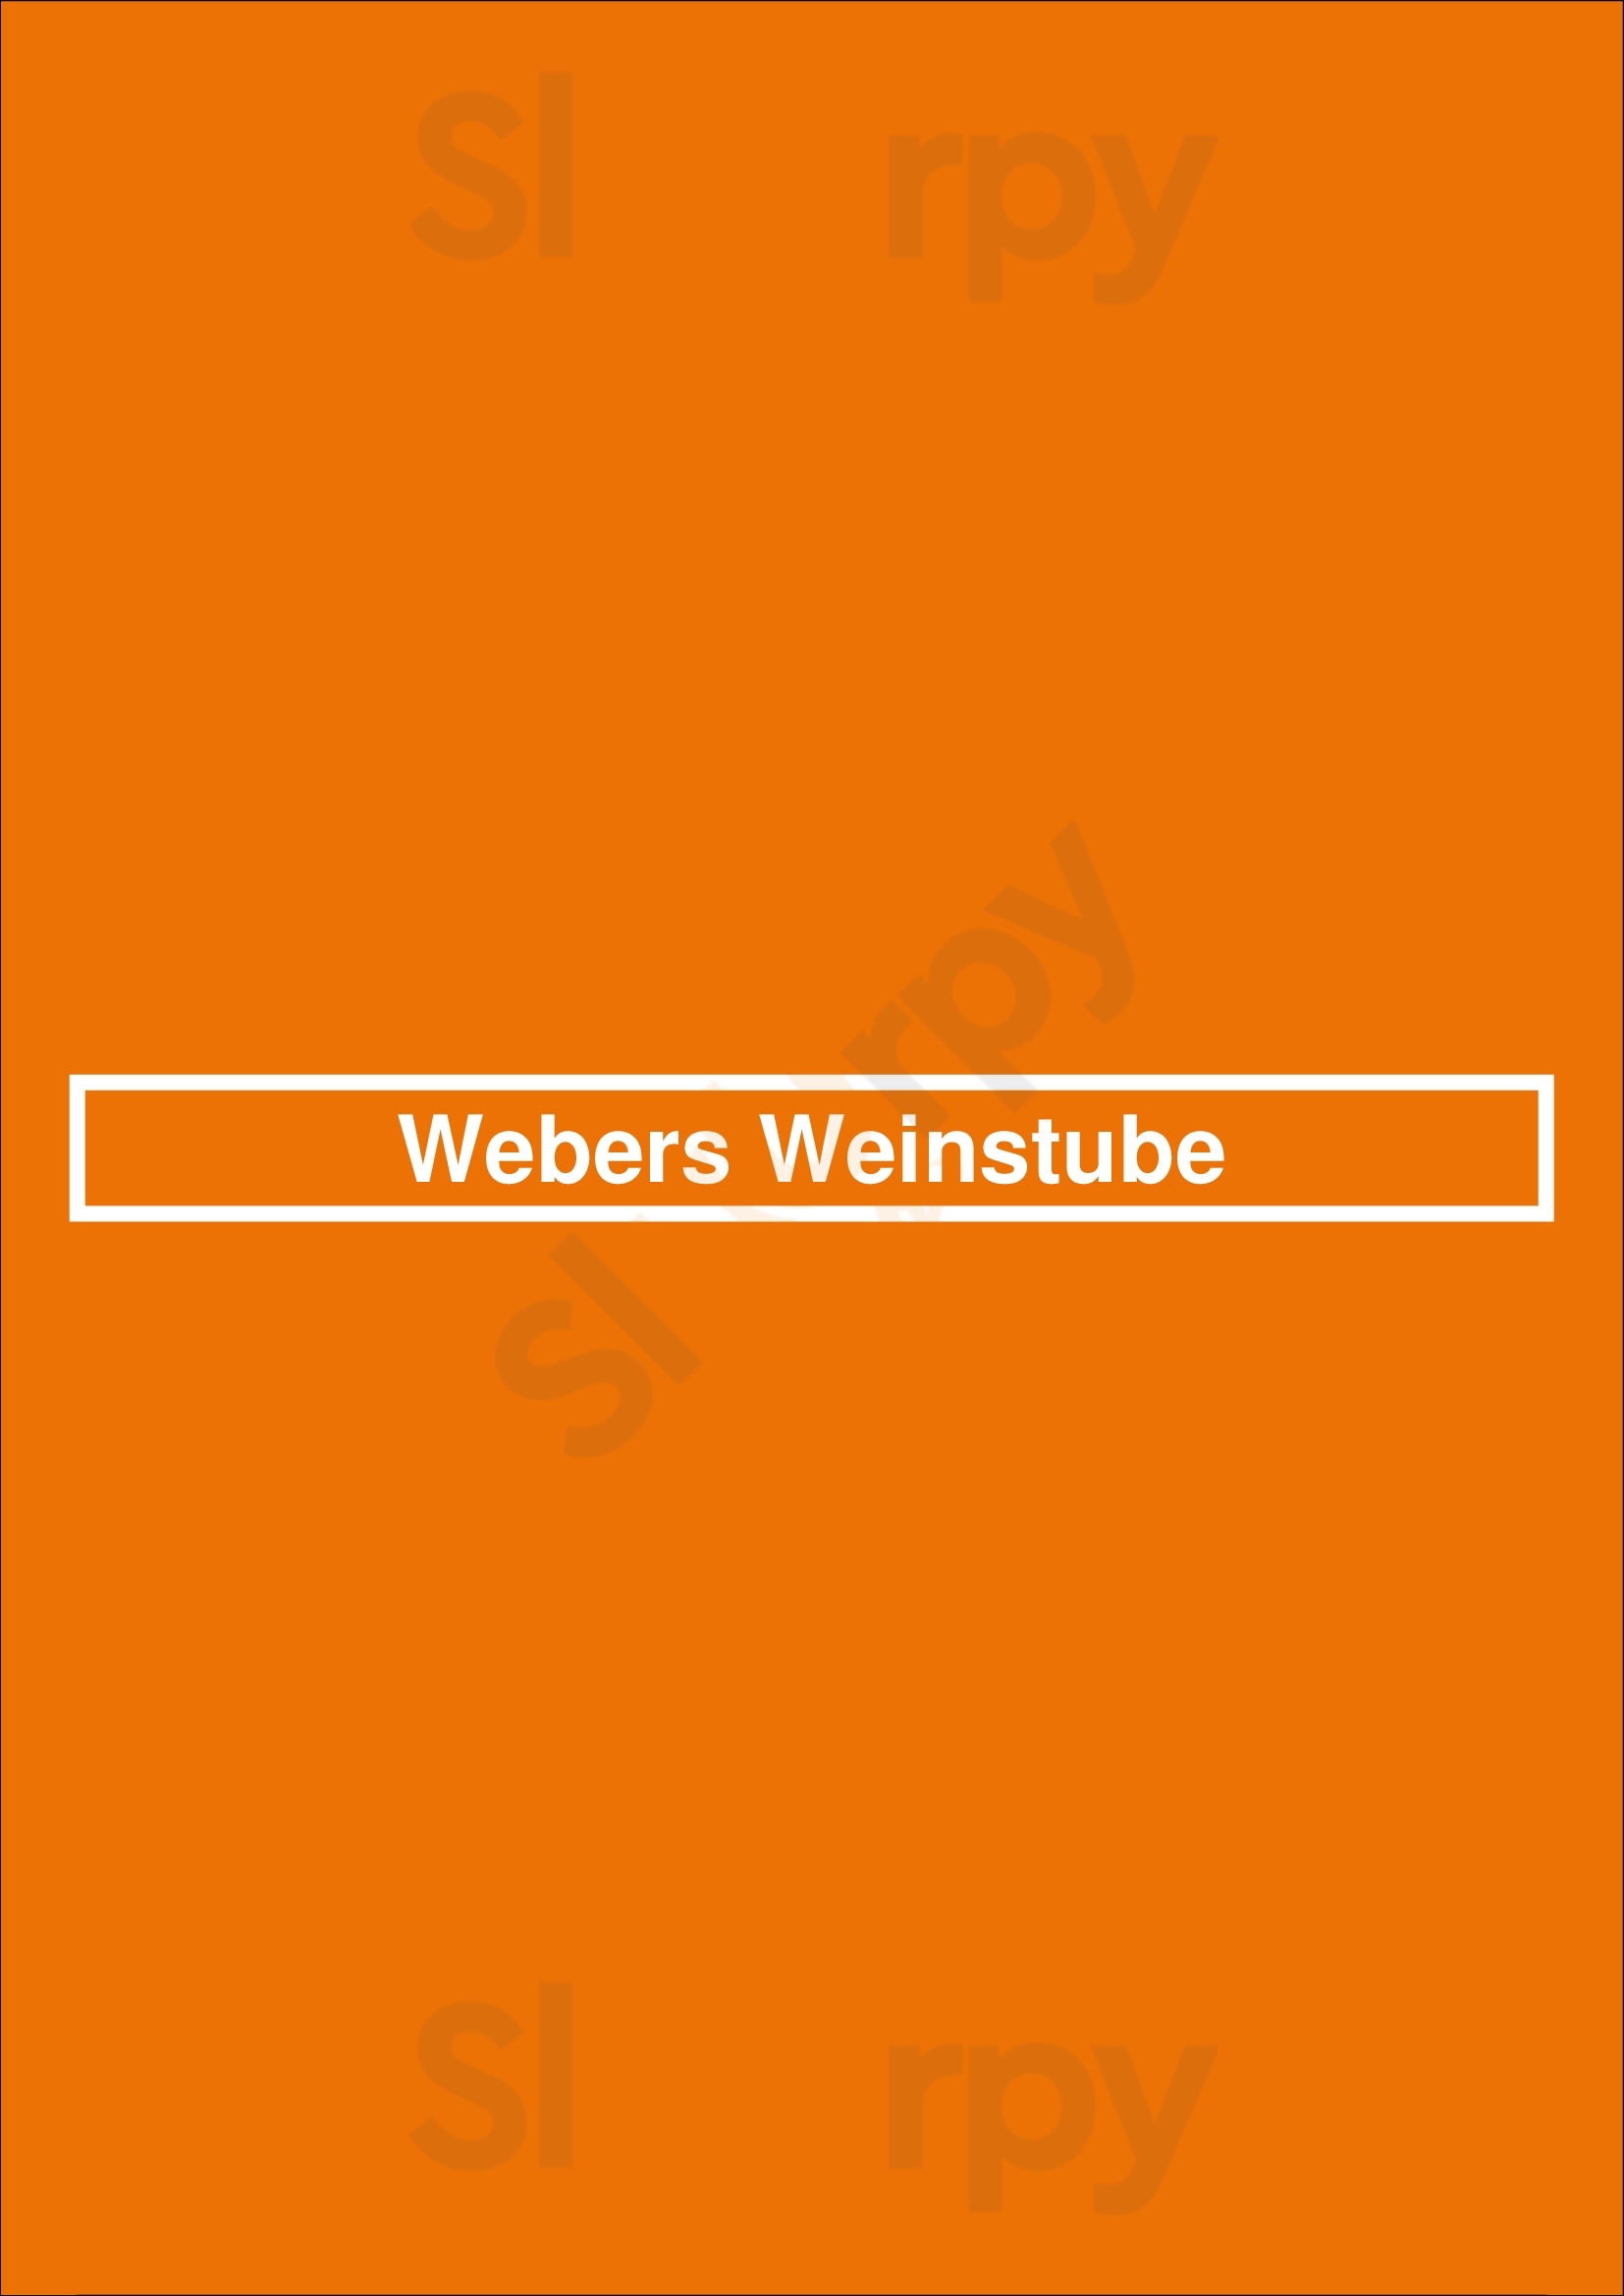 Webers Weinstube Freiburg Menu - 1